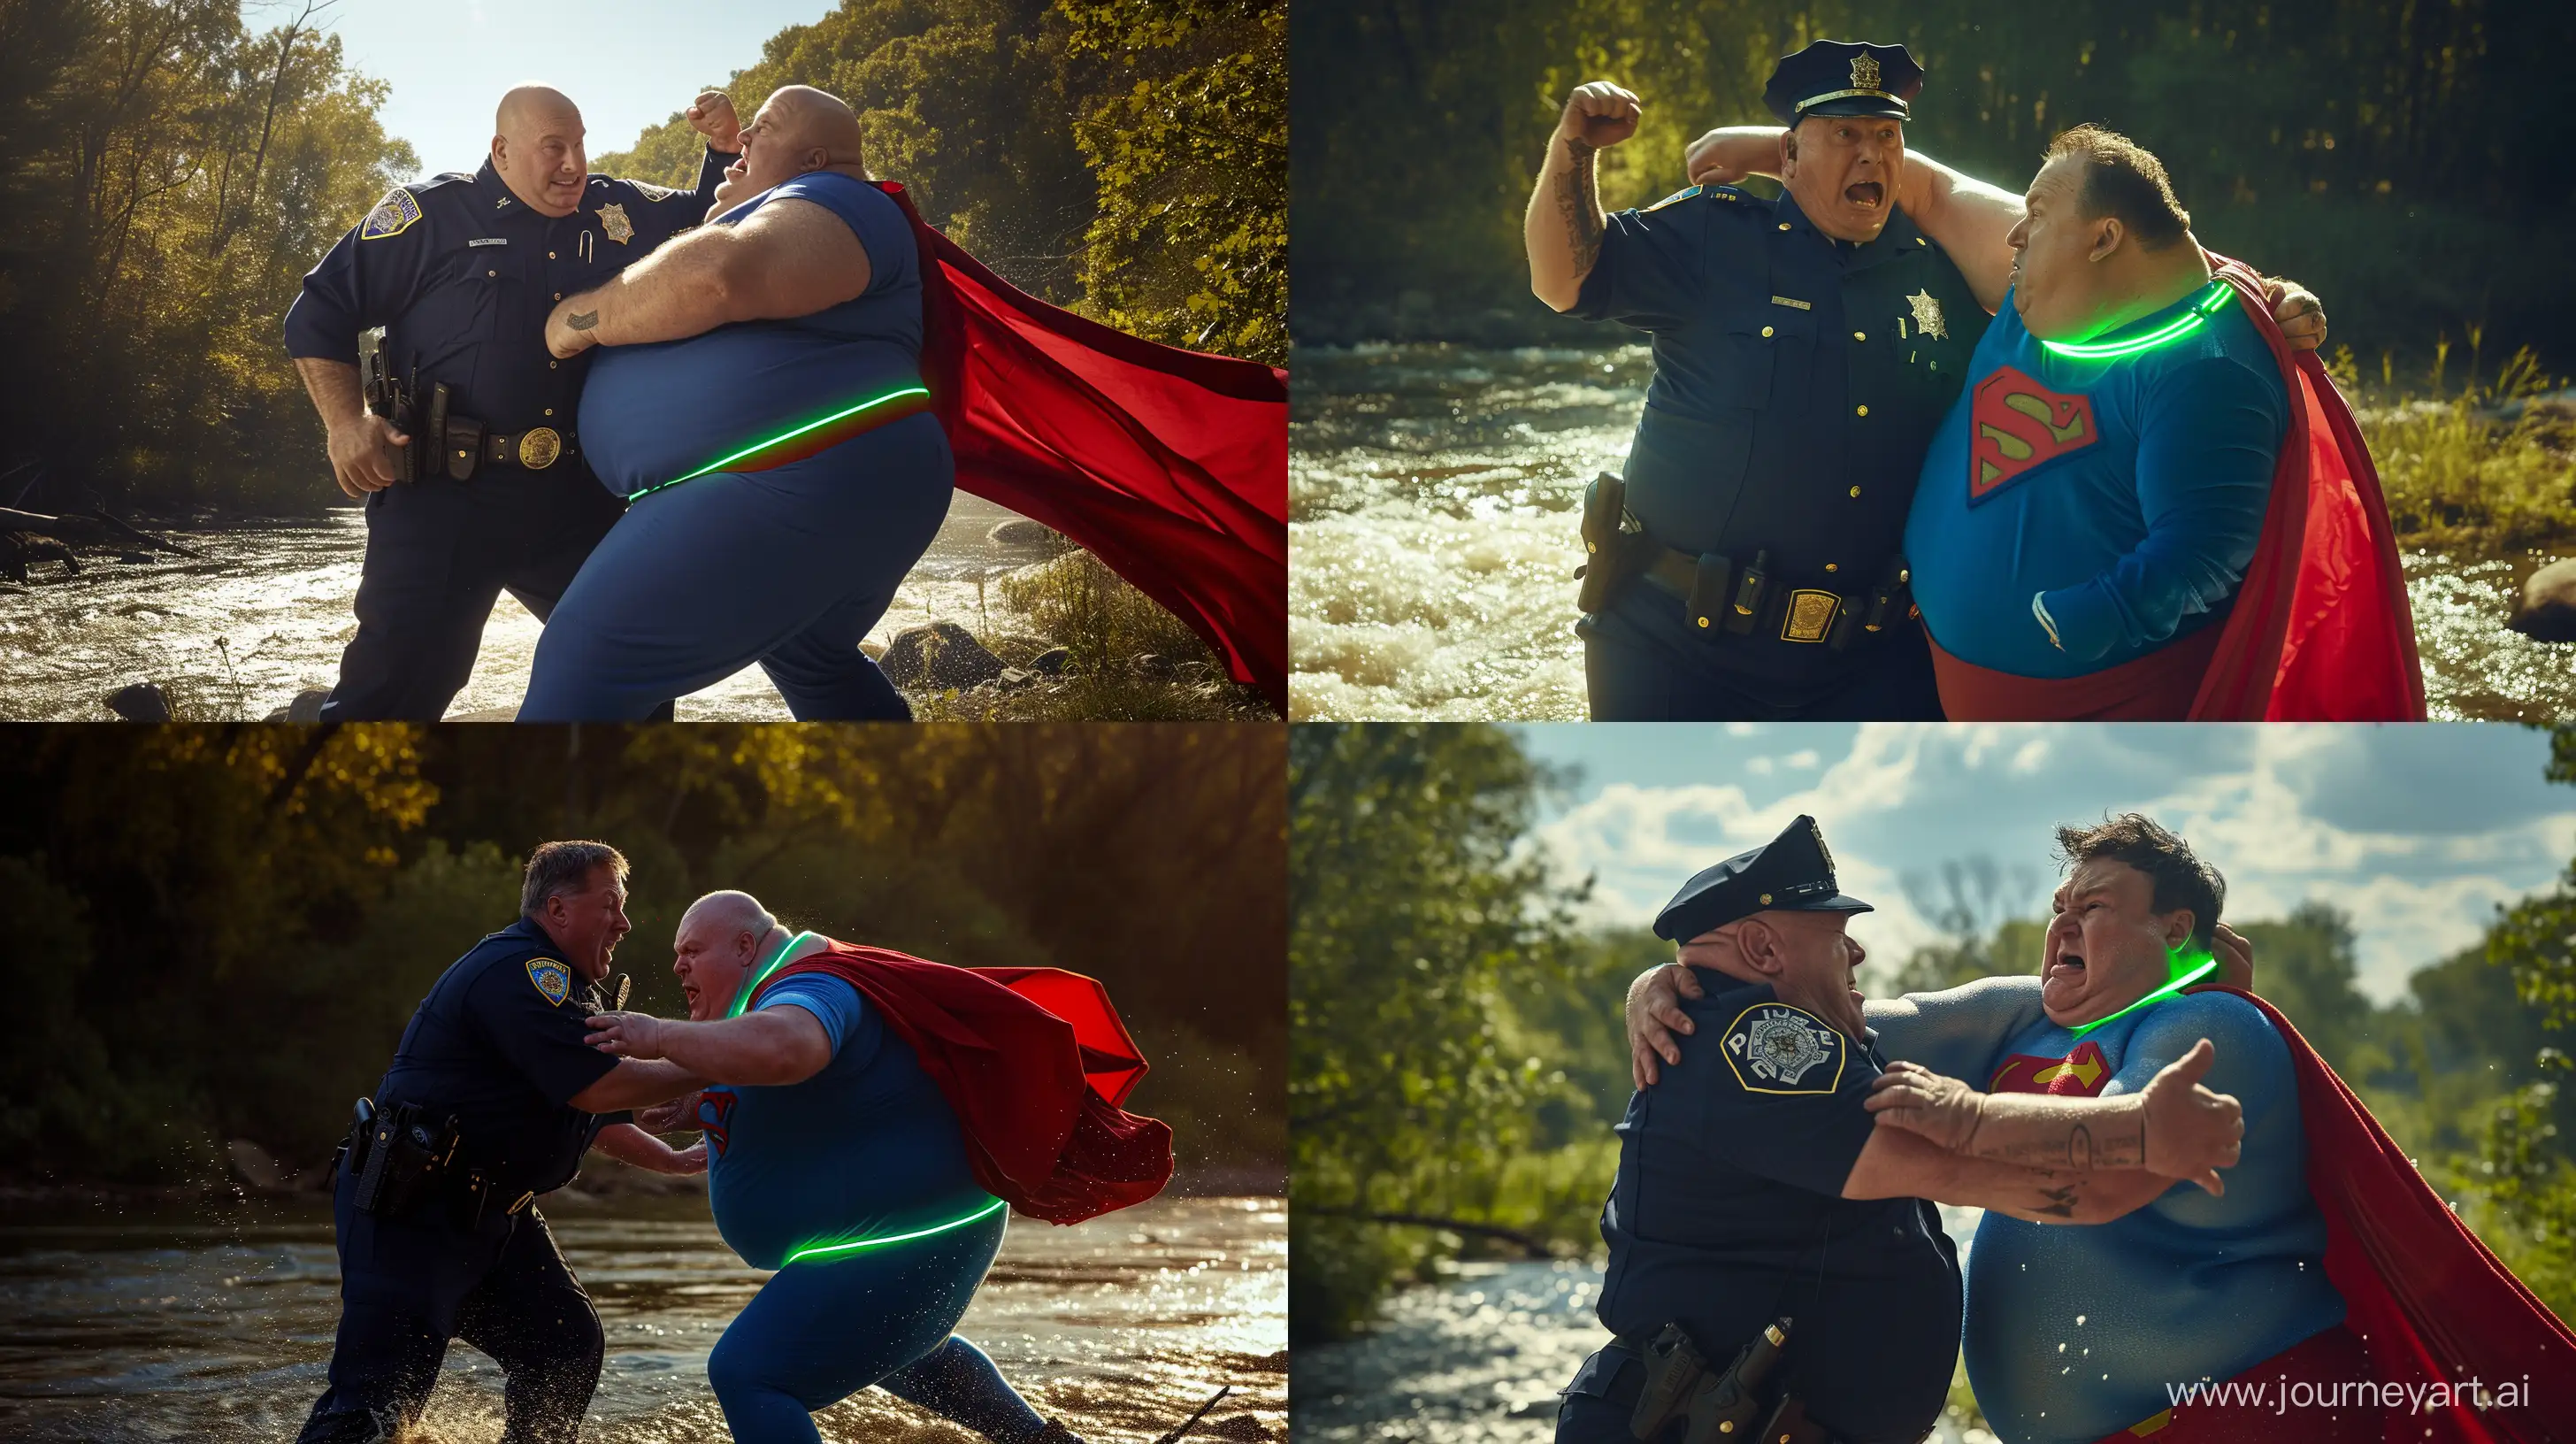 Epic-River-Showdown-Senior-Police-Officer-vs-Retro-Superman